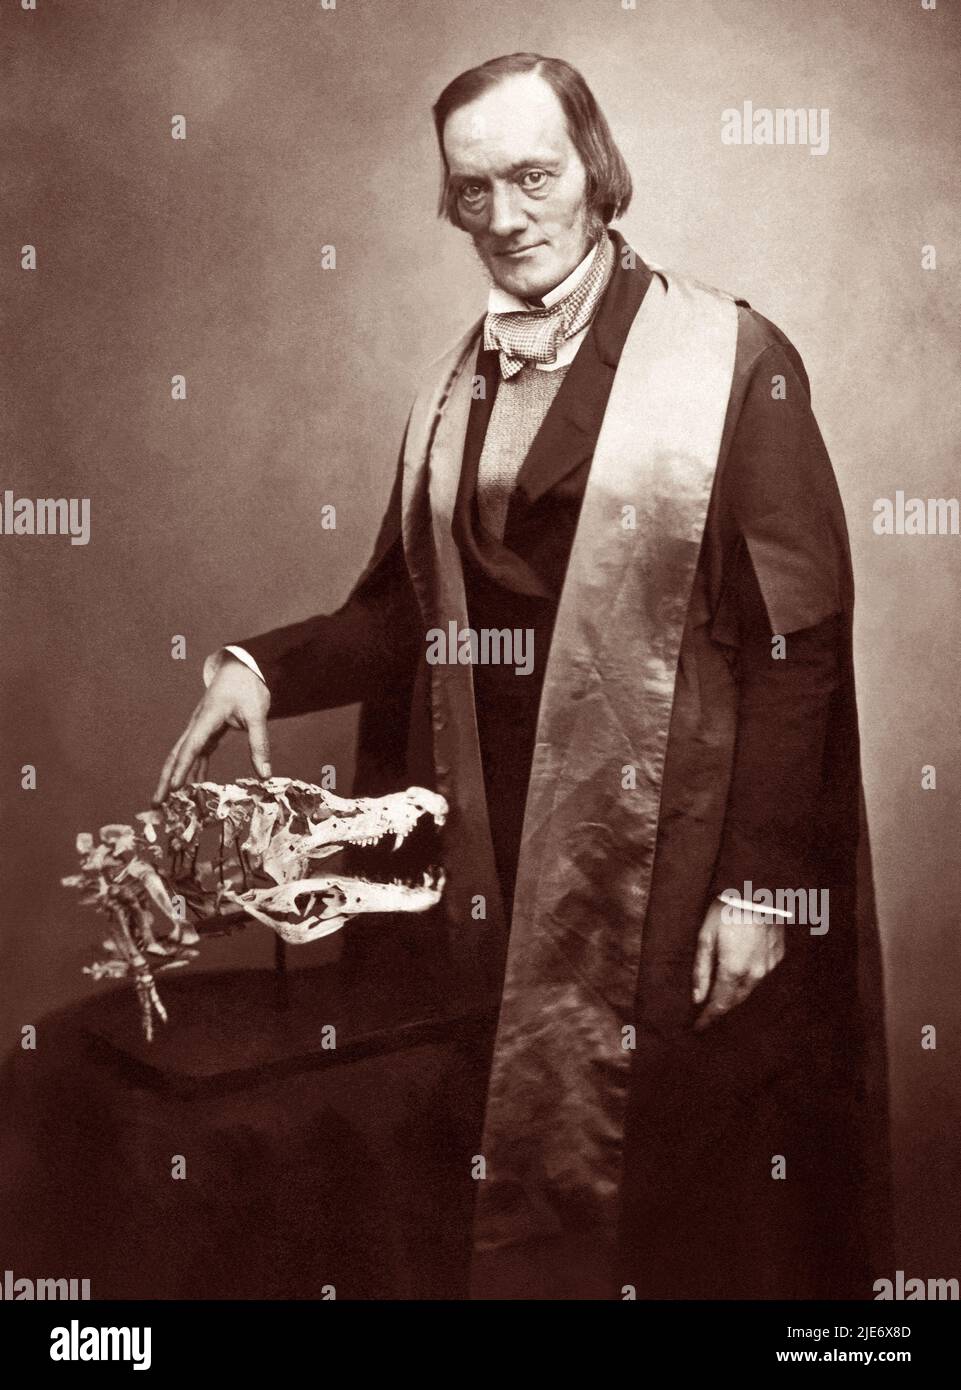 Sir Richard Owen KCB FRS (1804-1892) Biólogo inglés, anatomista comparativo y paleontólogo que acuñó el término dinosauria, del cual derivamos la palabra dinosaurio. Owen fue un crítico franco de la teoría de la evolución de Charles Darwin por la selección natural. Foto: 1856. Foto de stock